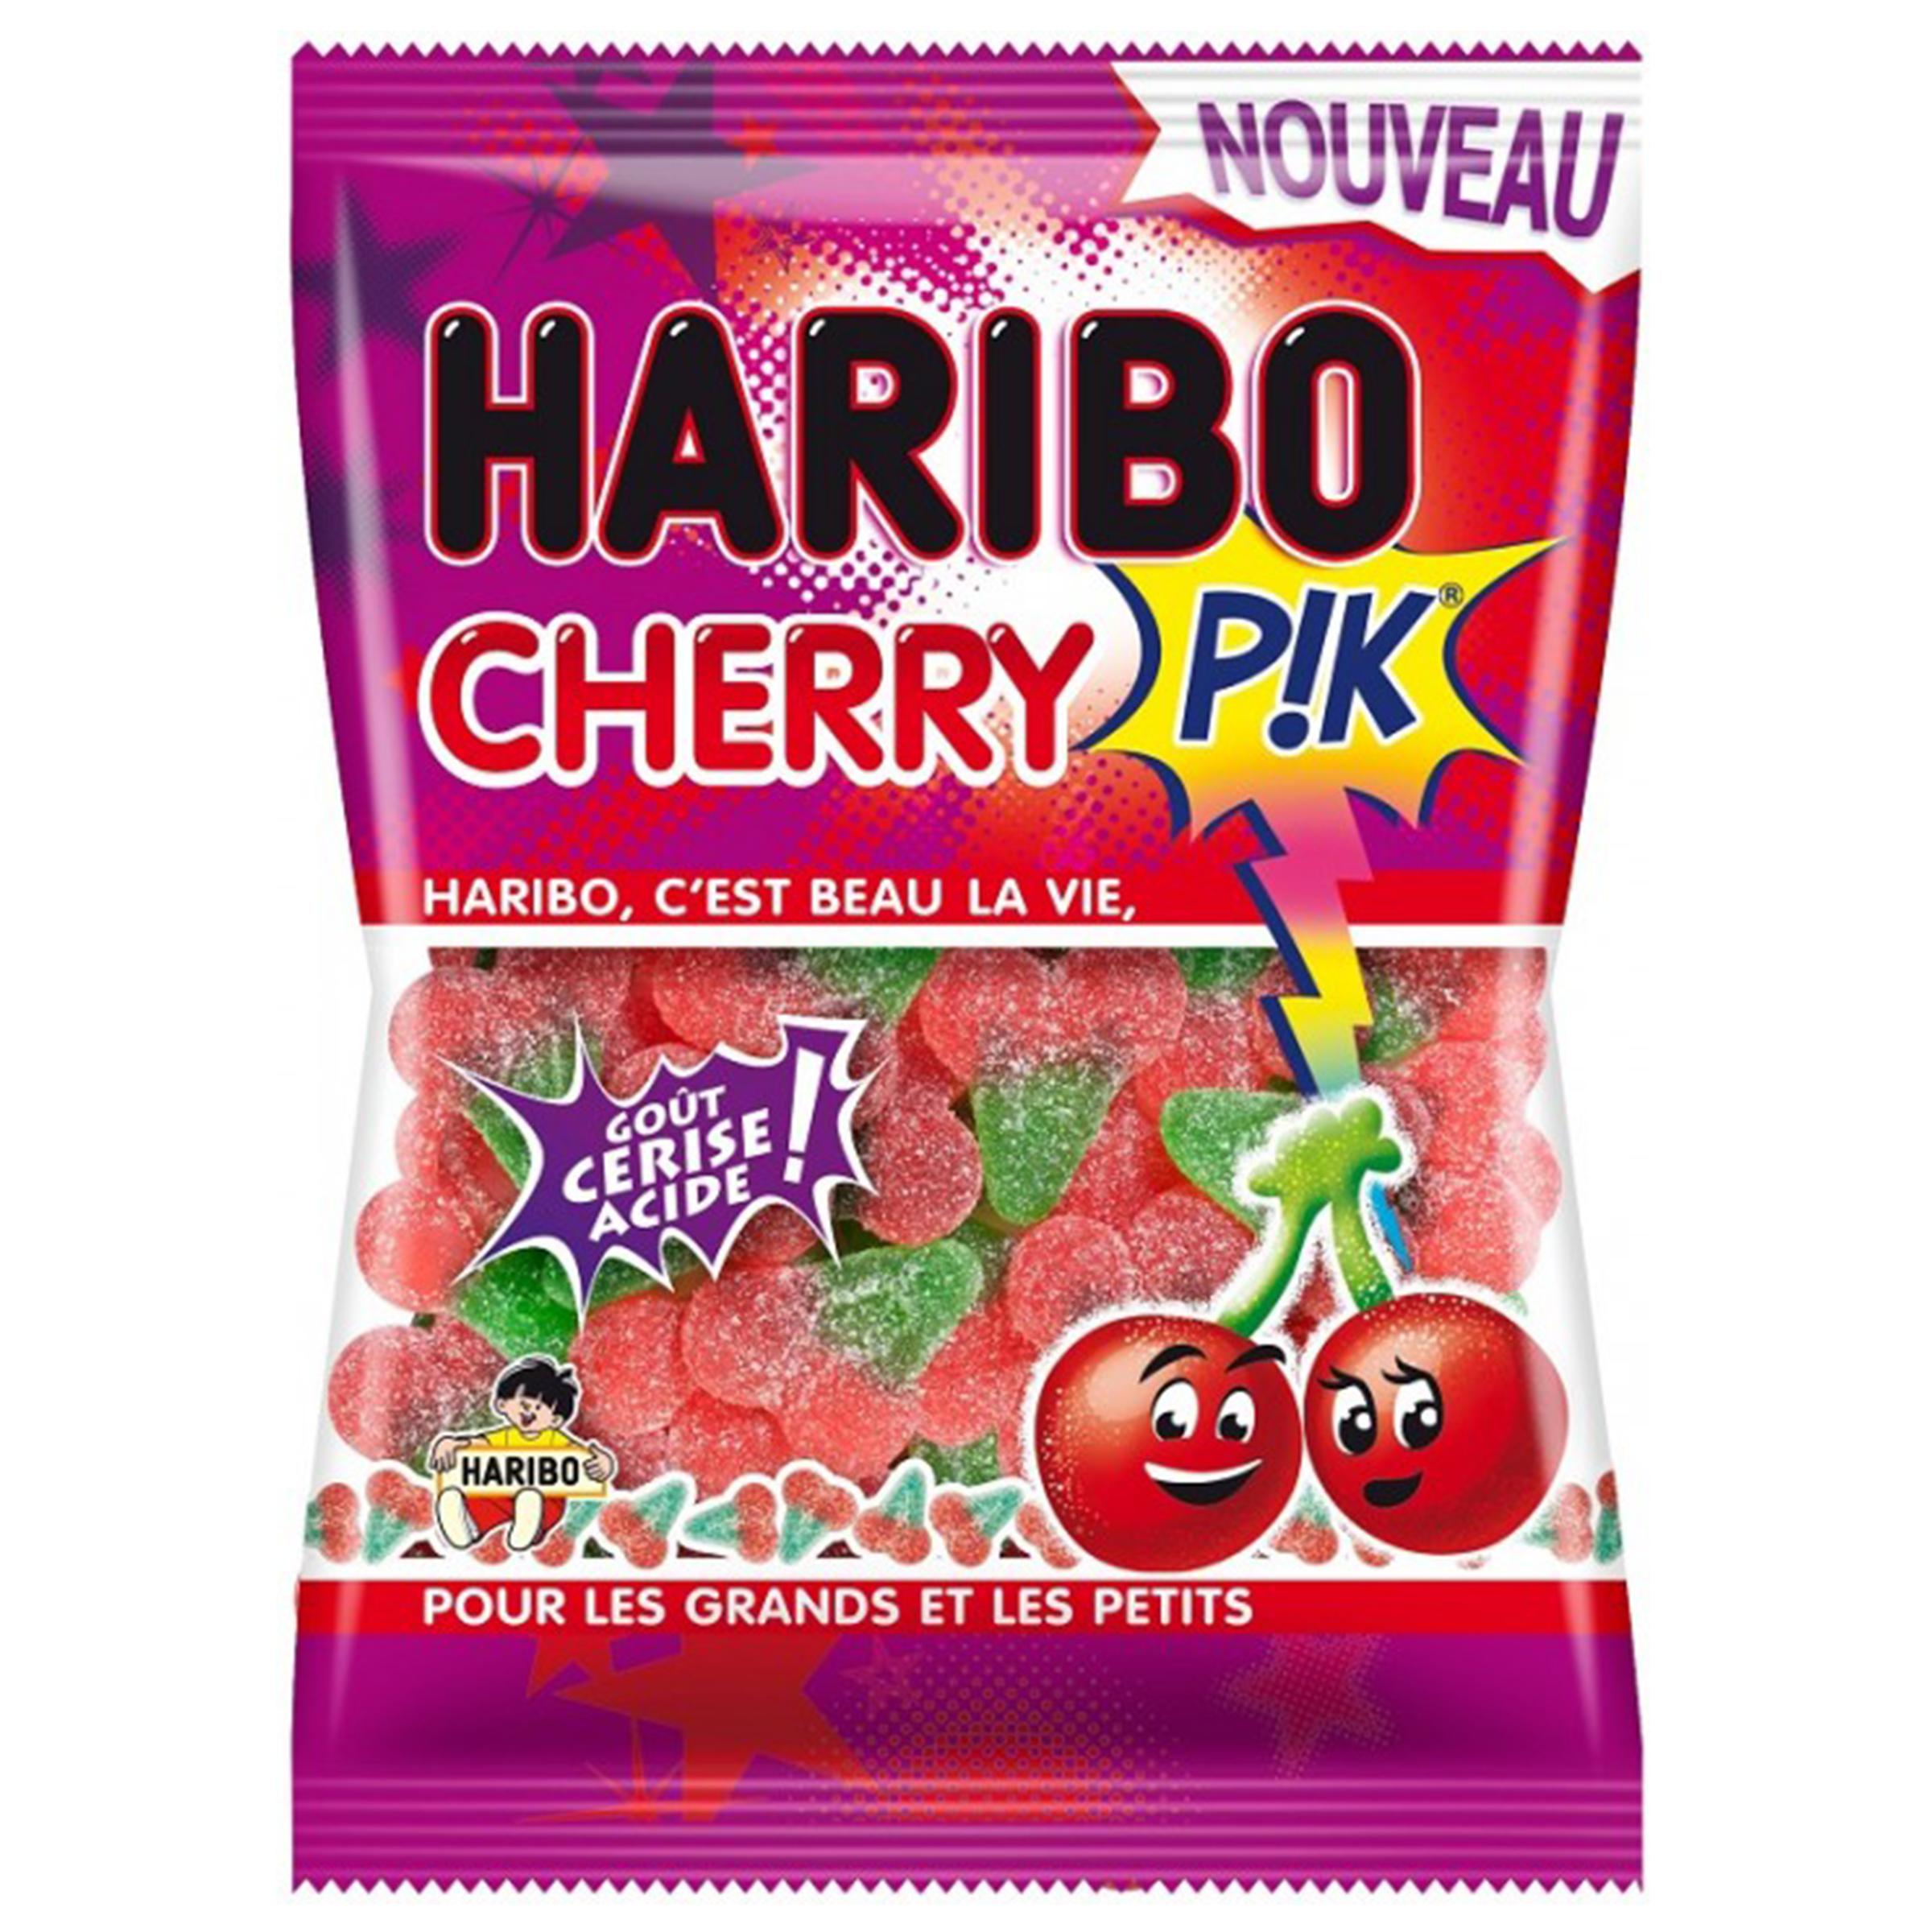 Haribo - Cherry P!K (Europe)